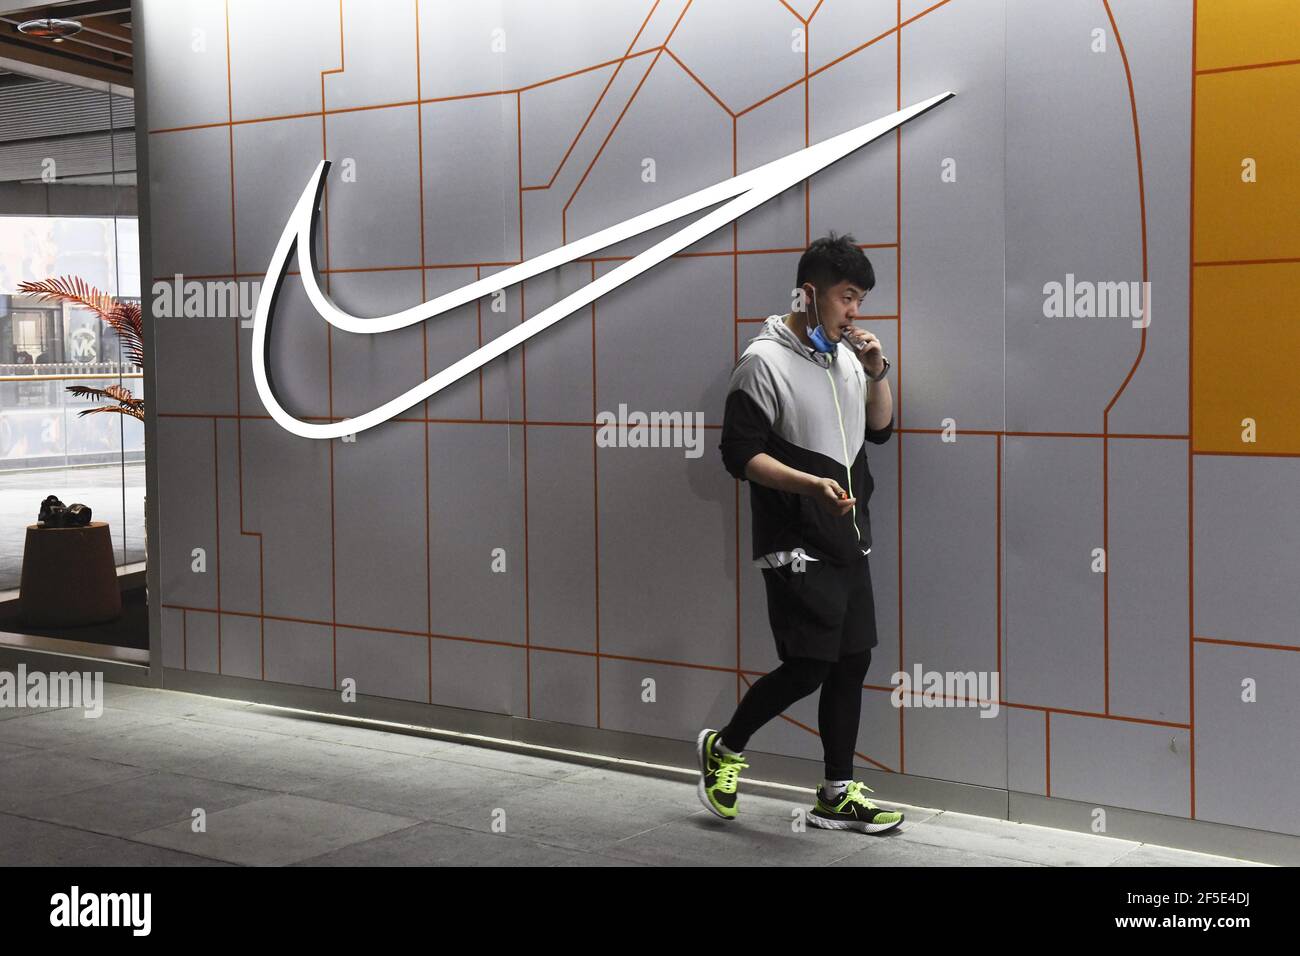 Das am 26. März 2021 aufgenommene Foto zeigt einen Nike Store in Peking.  China schlägt Nike und andere ausländische Bekleidungs- und Schuhmarken im  Gefolge westlicher Sanktionen gegen chinesische Beamte, die der  Menschenrechtsverletzungen